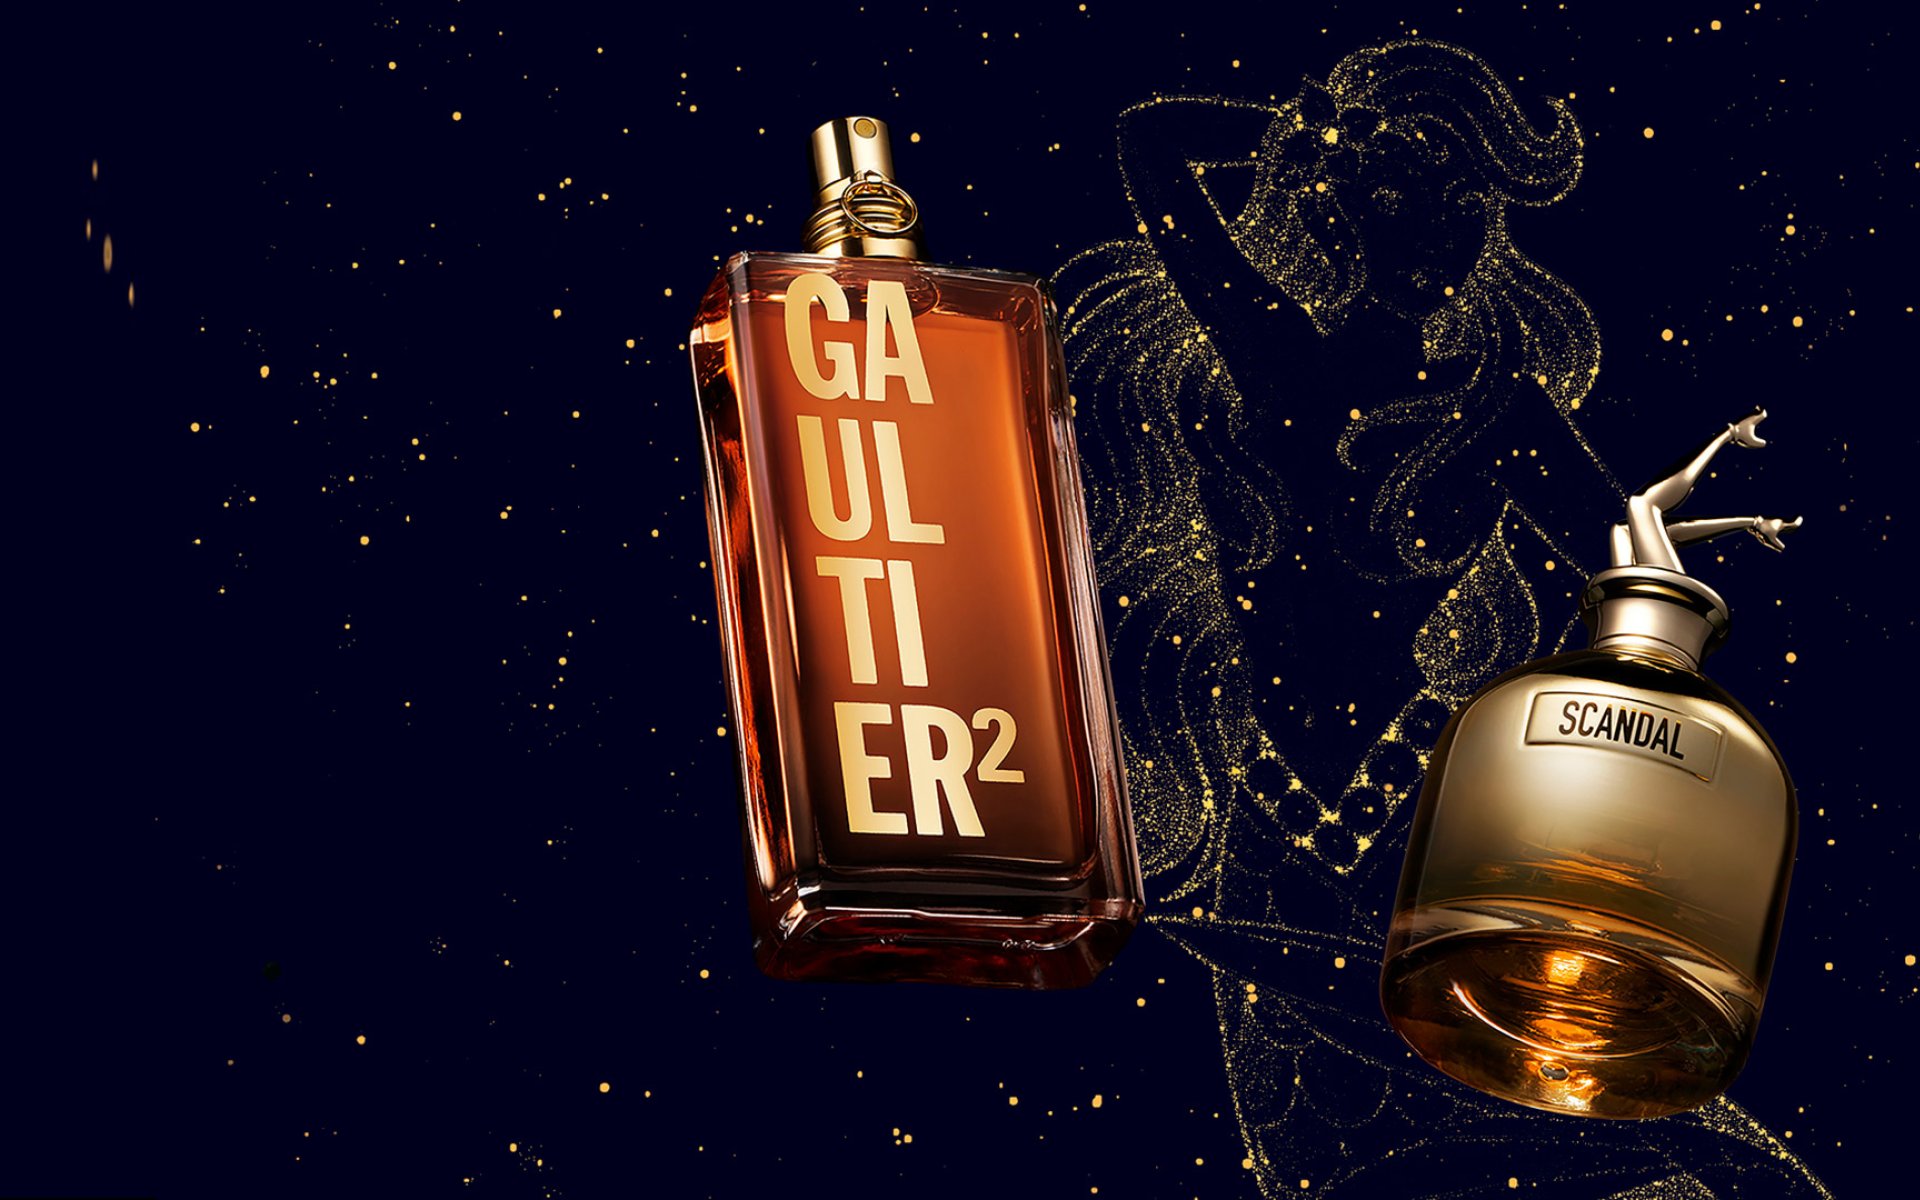 Gaultier² et Scandal Gold